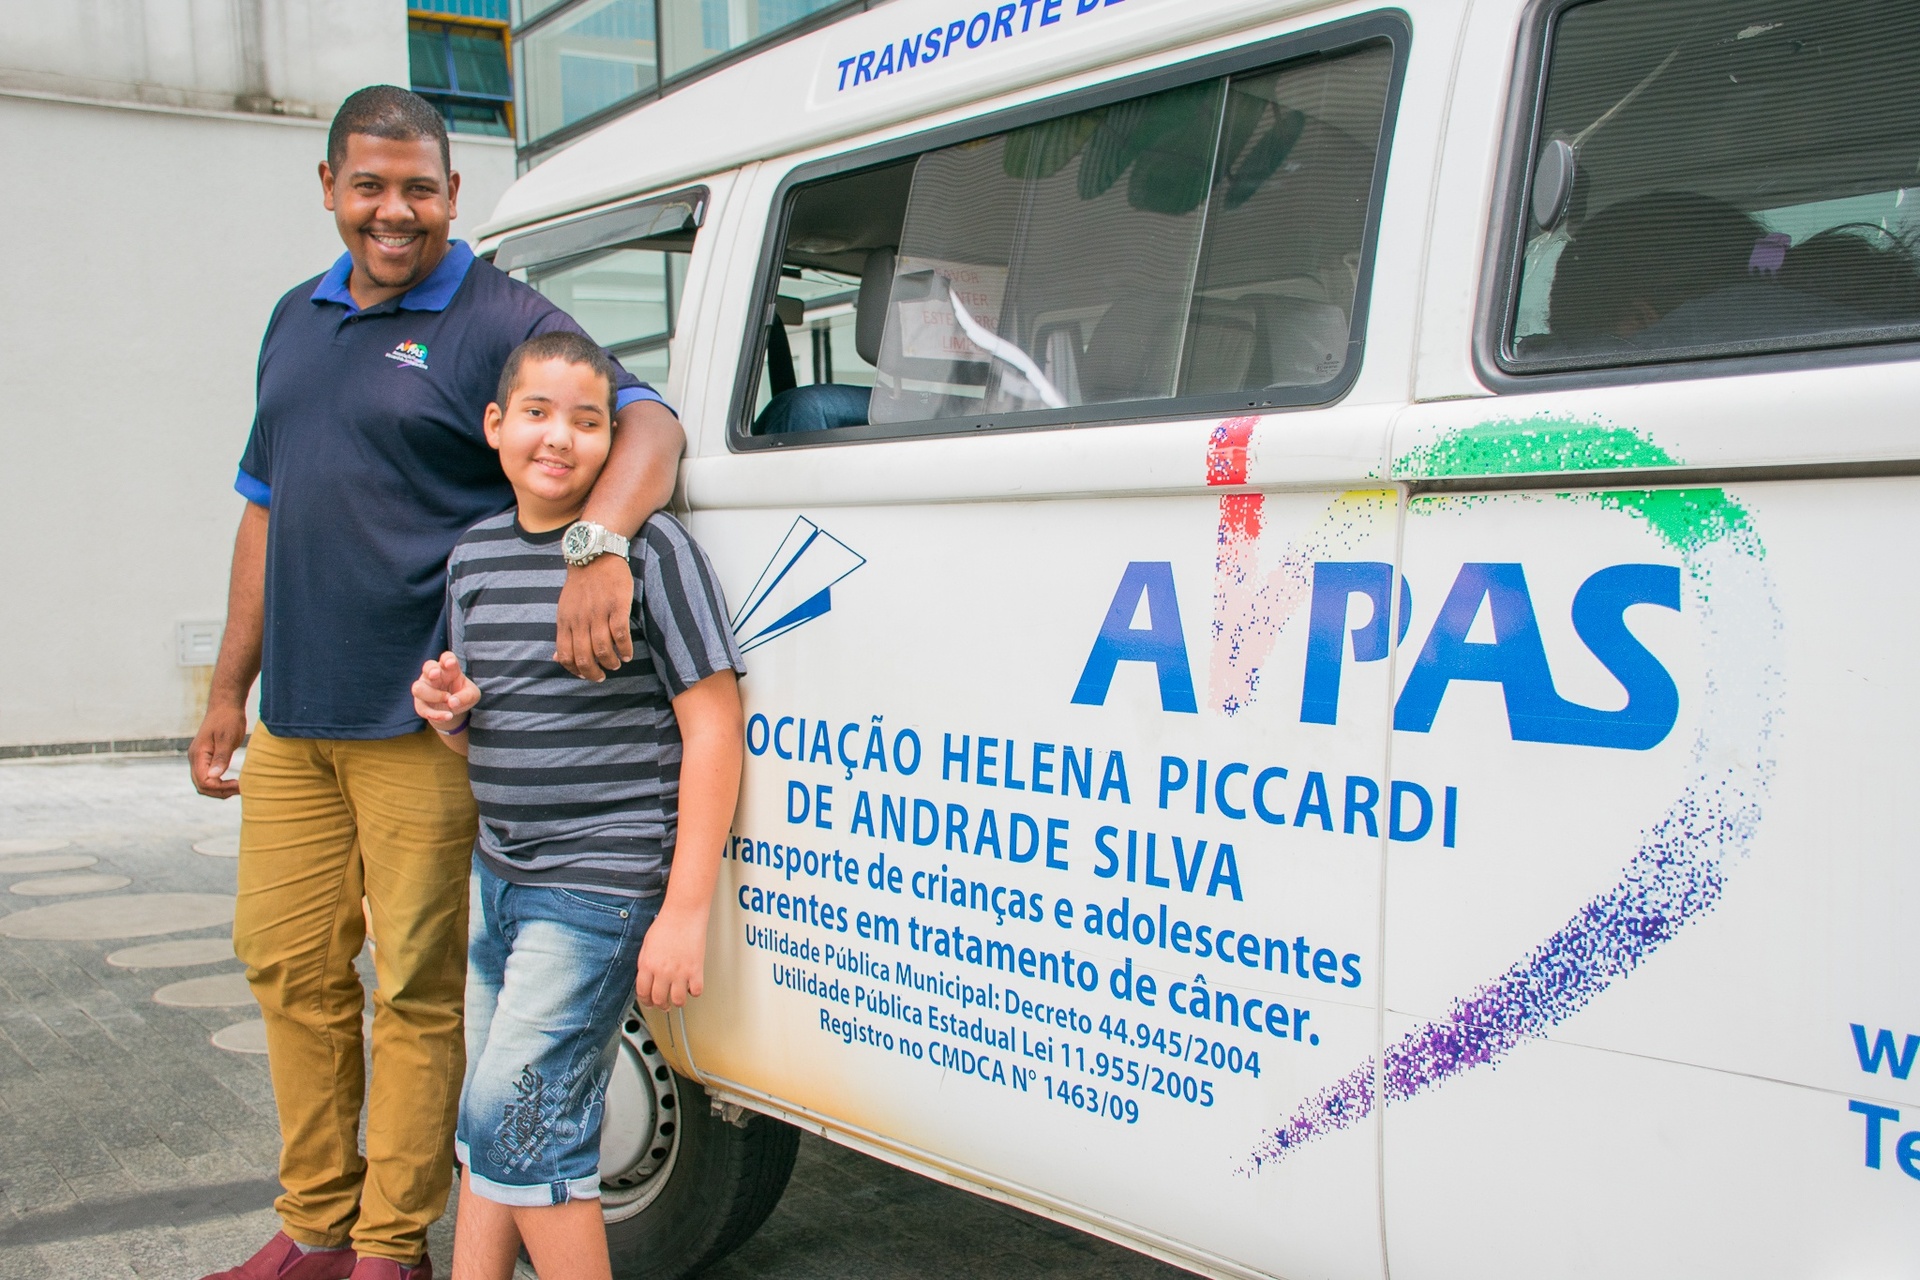 A AHPAS oferece transporte a crianças em tratamento